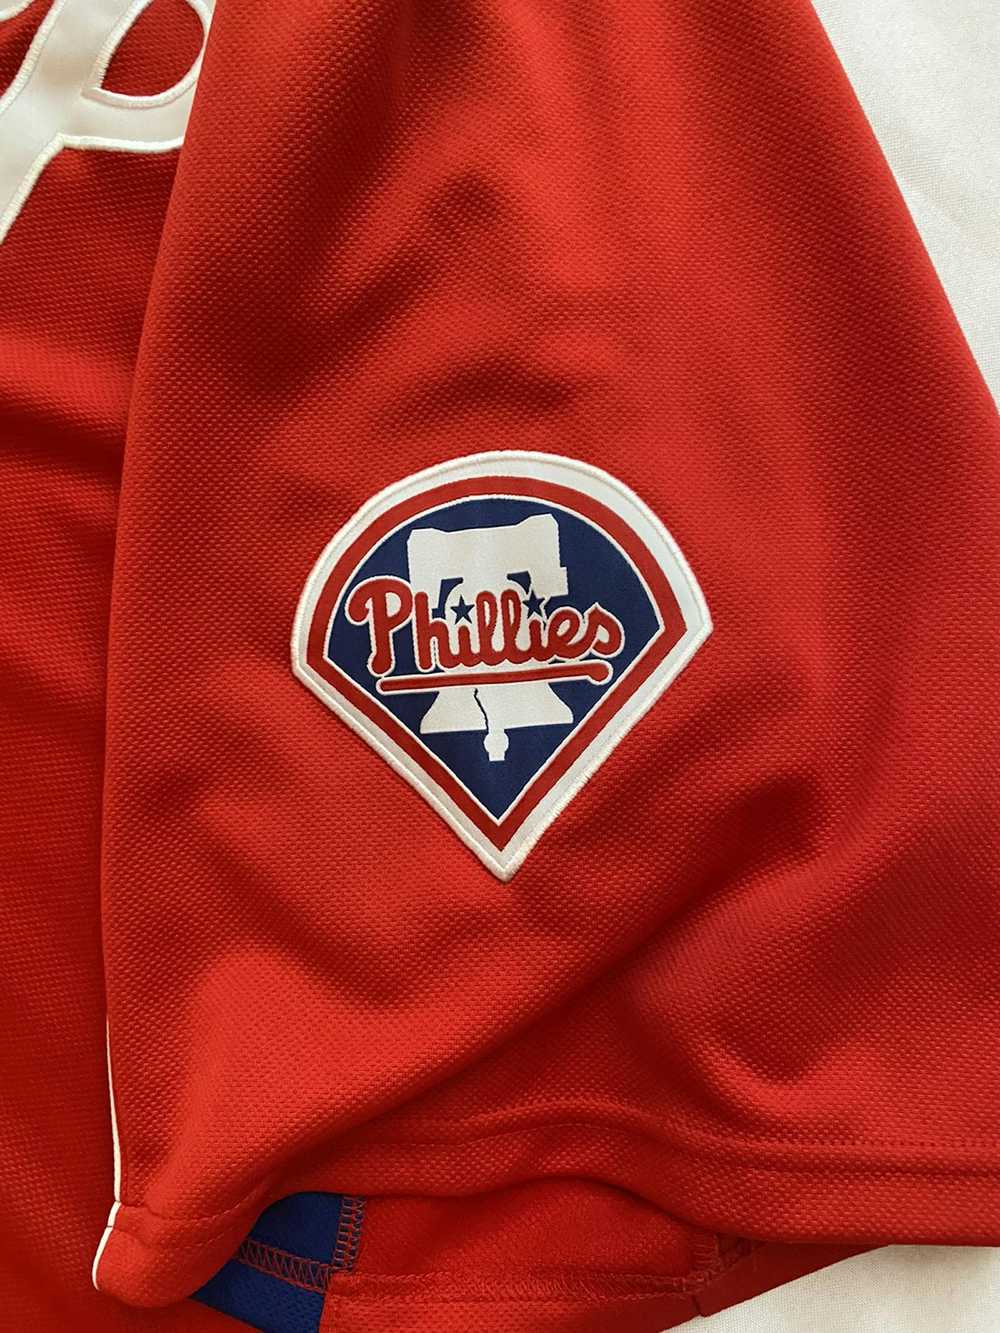 Majestic Lee Philadelphia Phillies baseball jersey - image 3